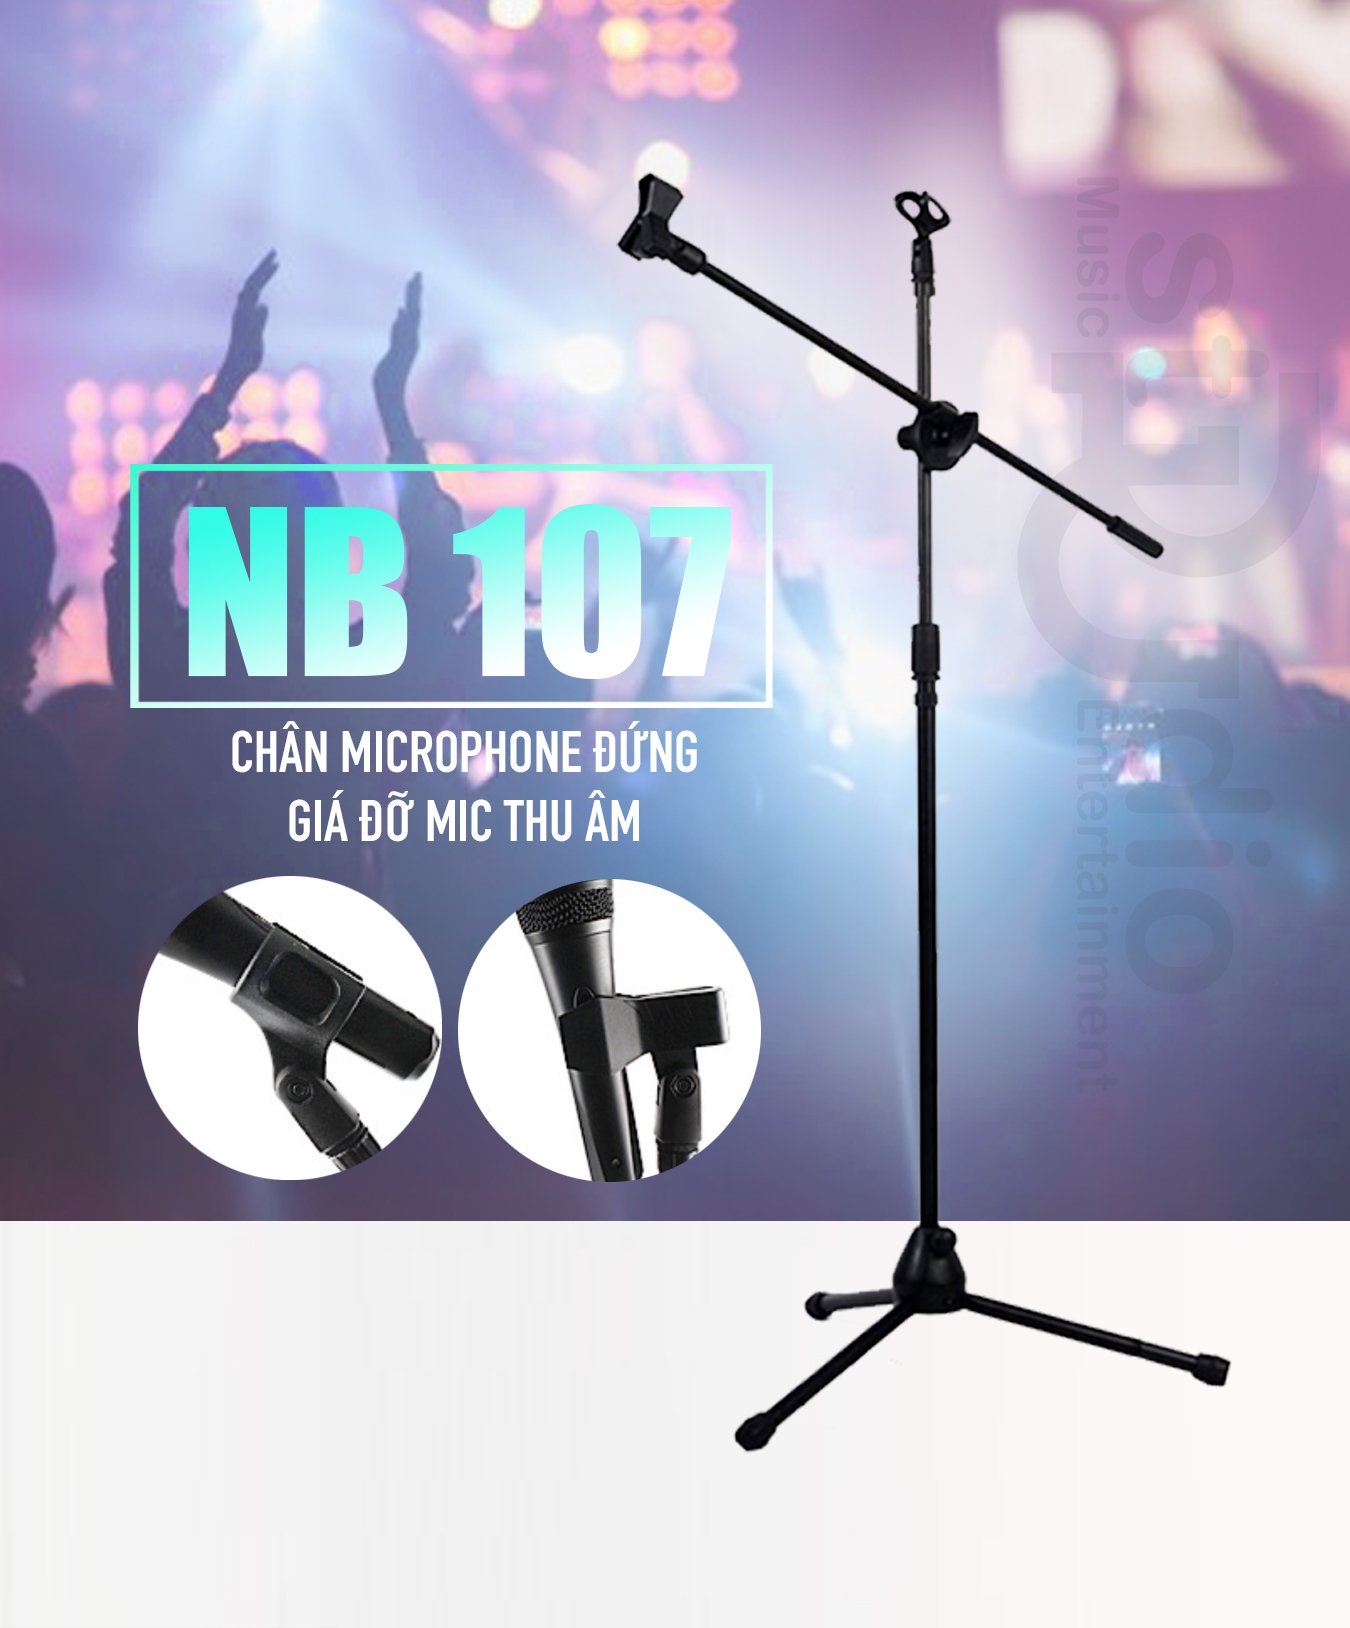 Chân Microphone đứng, Giá đỡ Mic thu âm NB 107 Boom Micro Stand